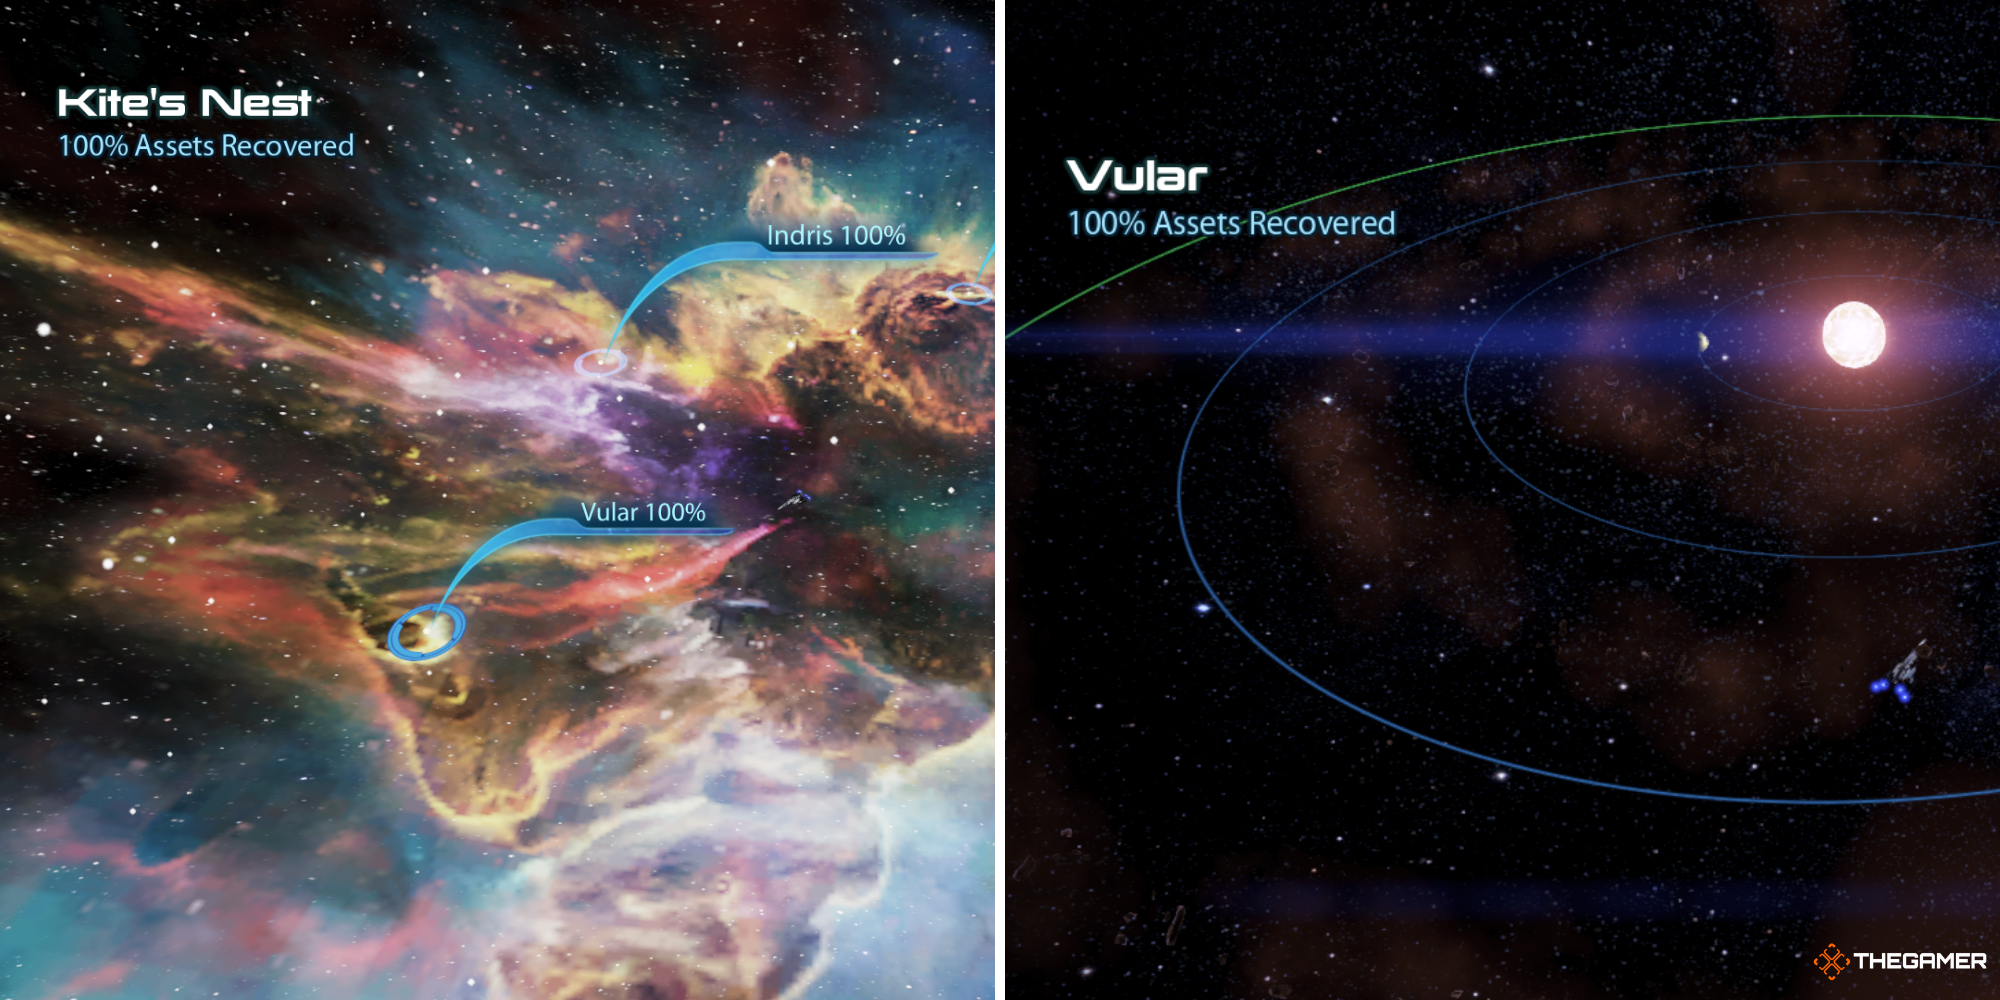 Mass Effect 3 - Kite's Nest Cluster on left, Vular system on right